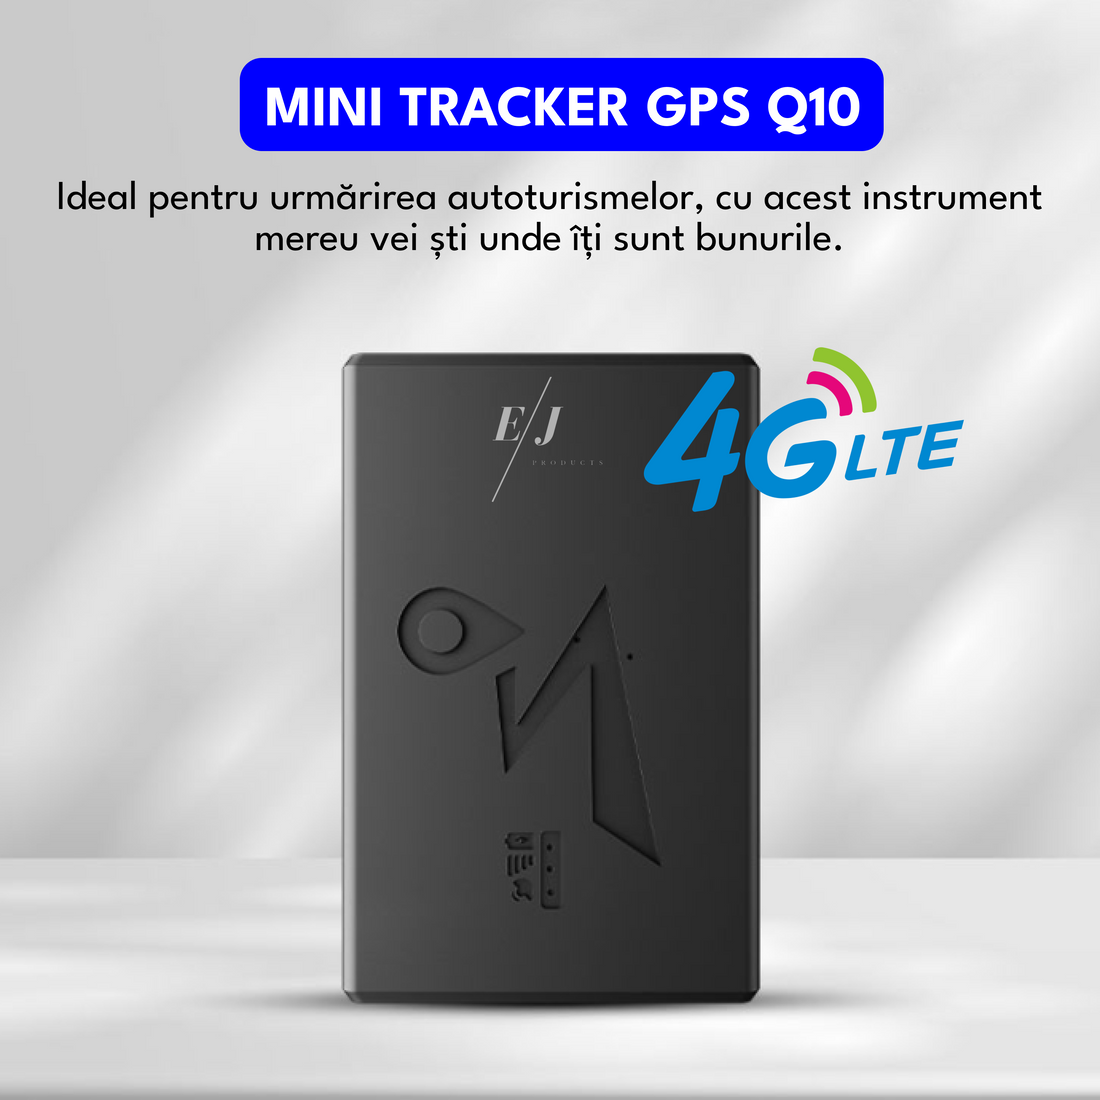 Mini tracker GPS 4G, Q10, monitorizare in timp real, magnetic, autonomie 15 ore, standby 45 zile, rezistent la apa IP67